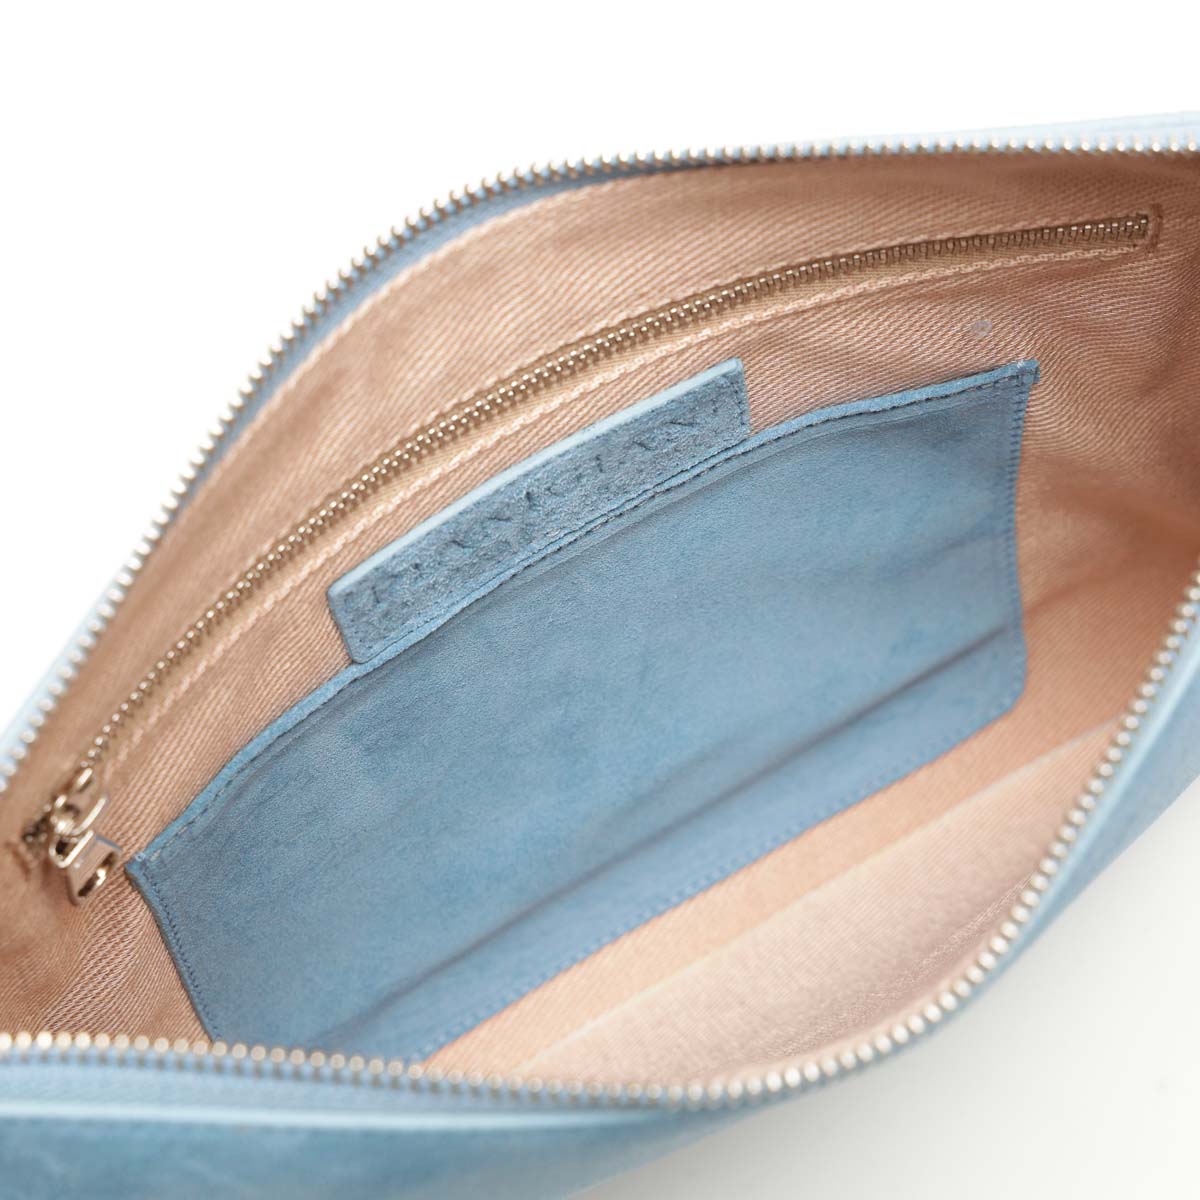 Rose, borsa modello bustina con polsino in pelle scamosciata denim, prodotta da Pianigiani.